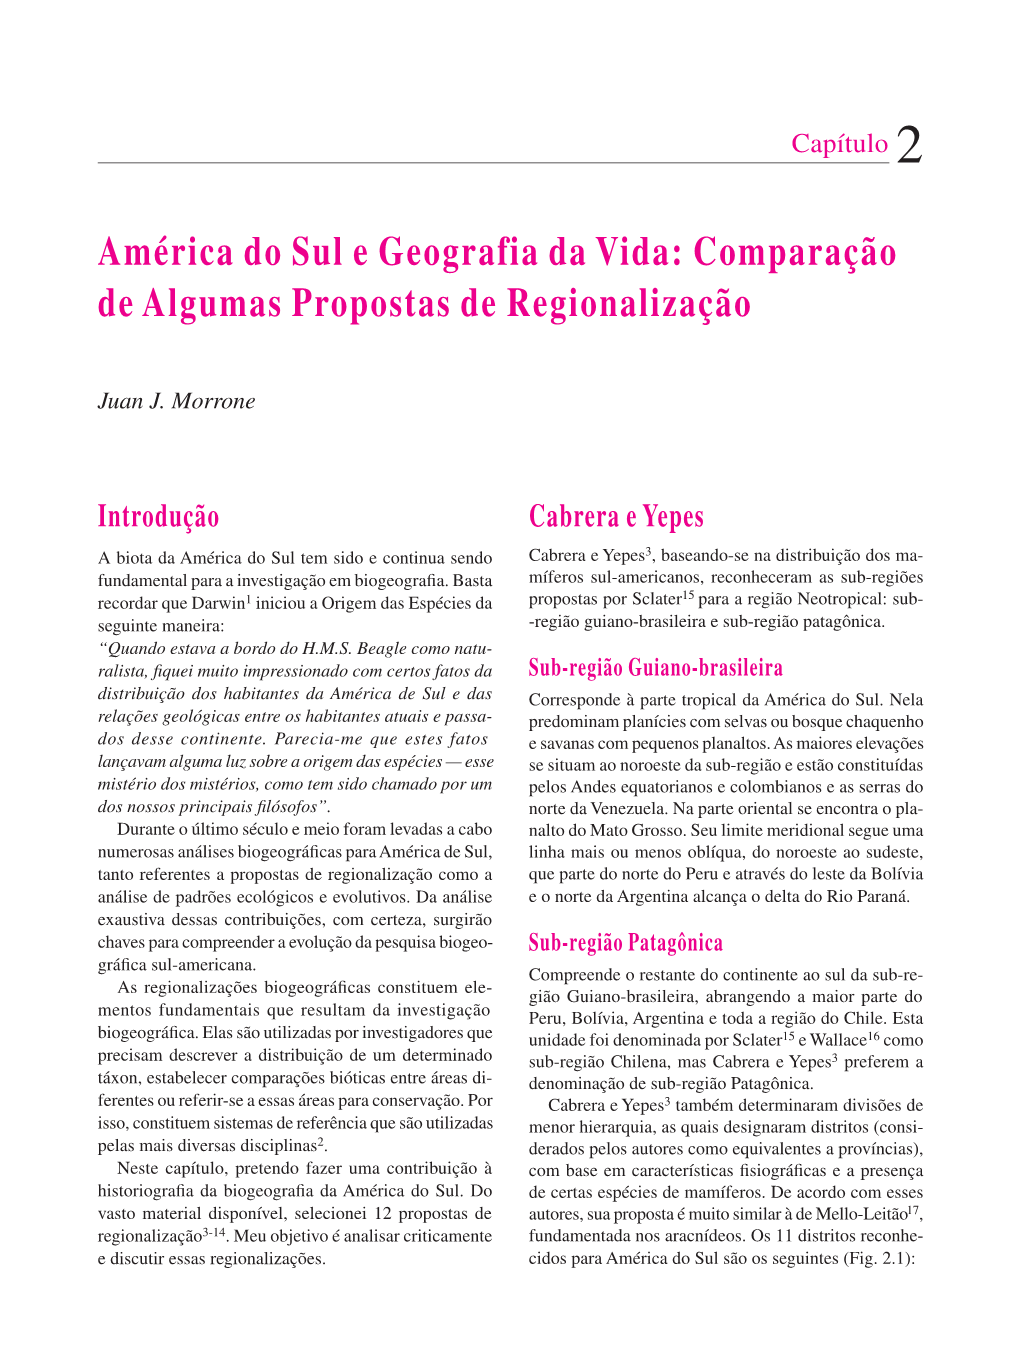 América Do Sul E Geografia Da Vida: Comparação De Algumas Propostas De Regionalização